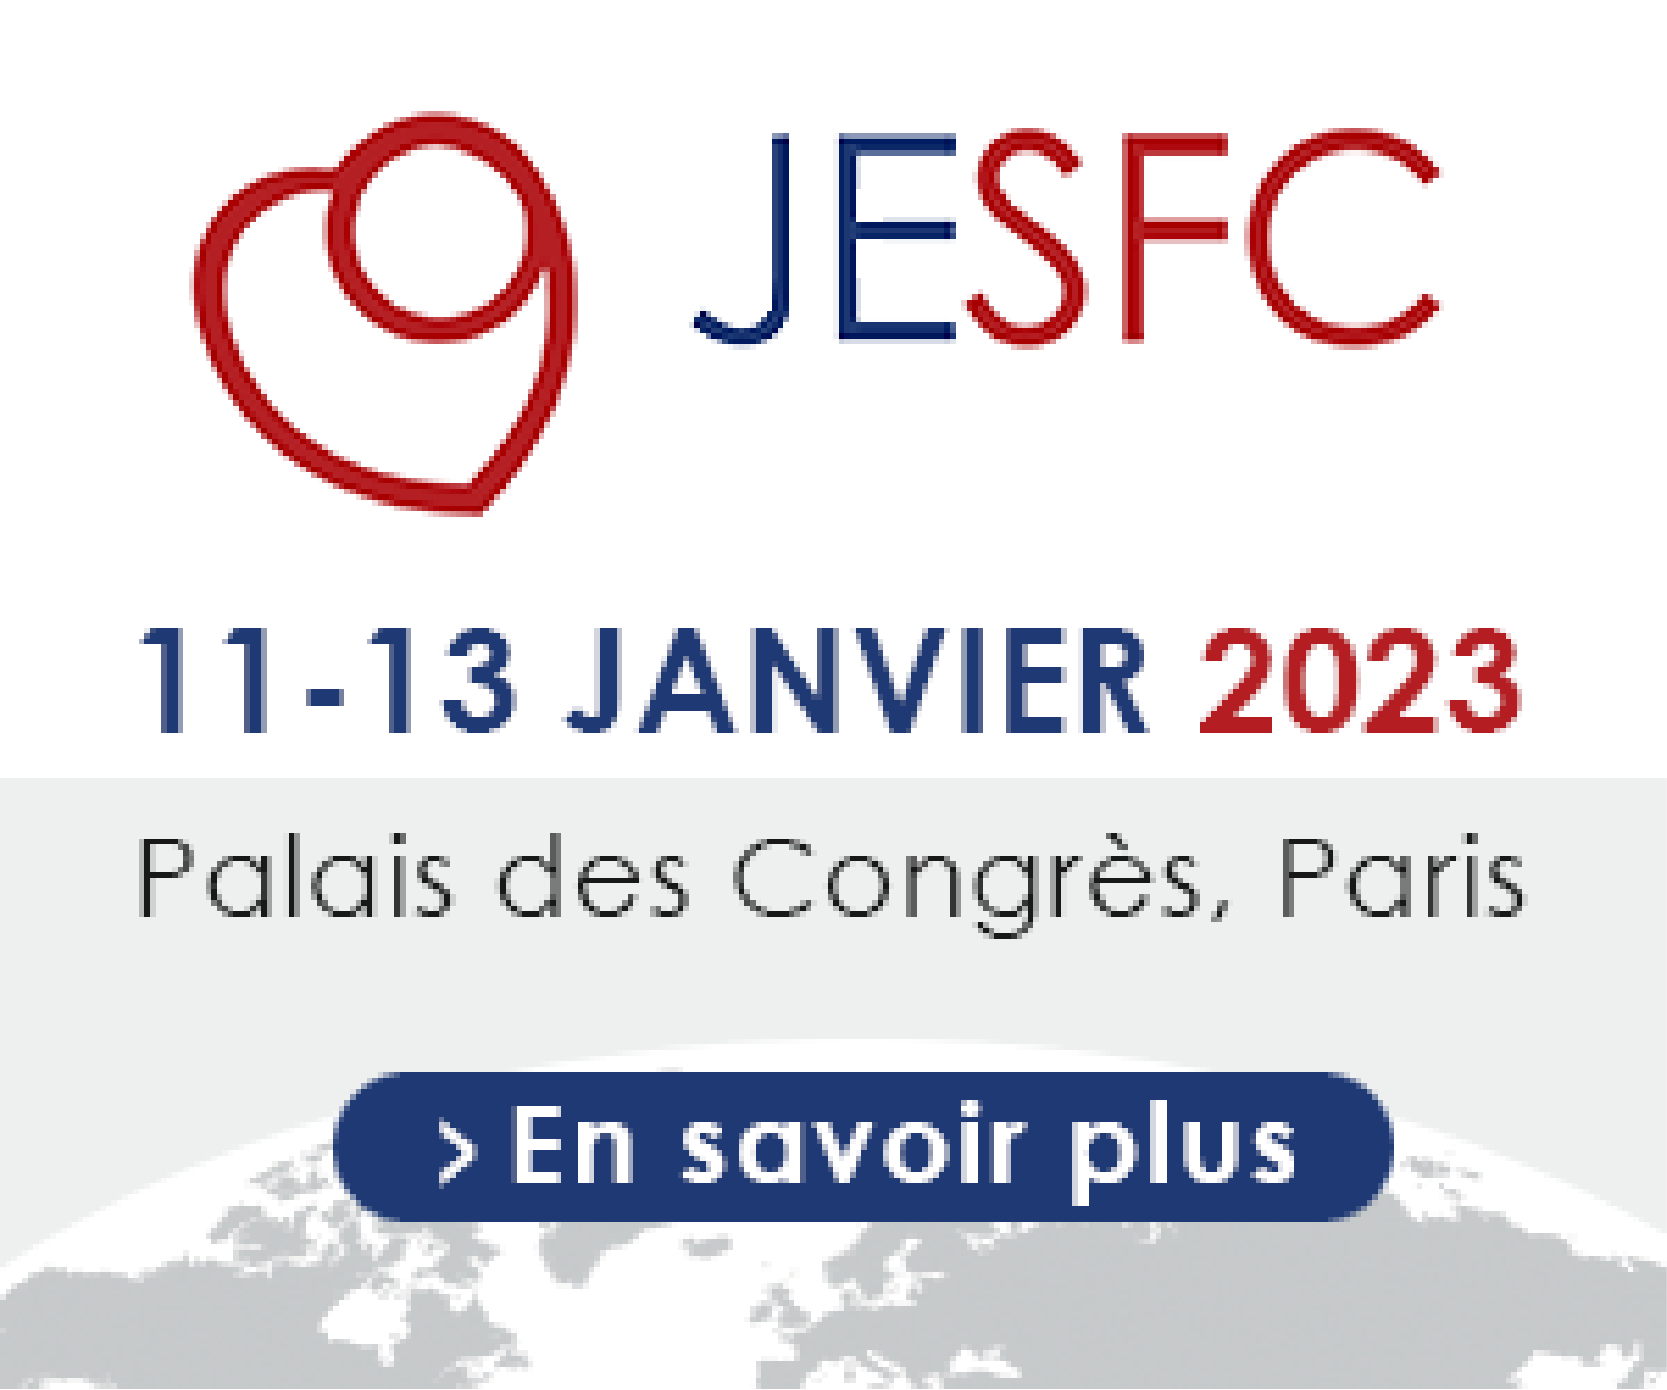 Journées Européennes de la SFC - JESFC 2023